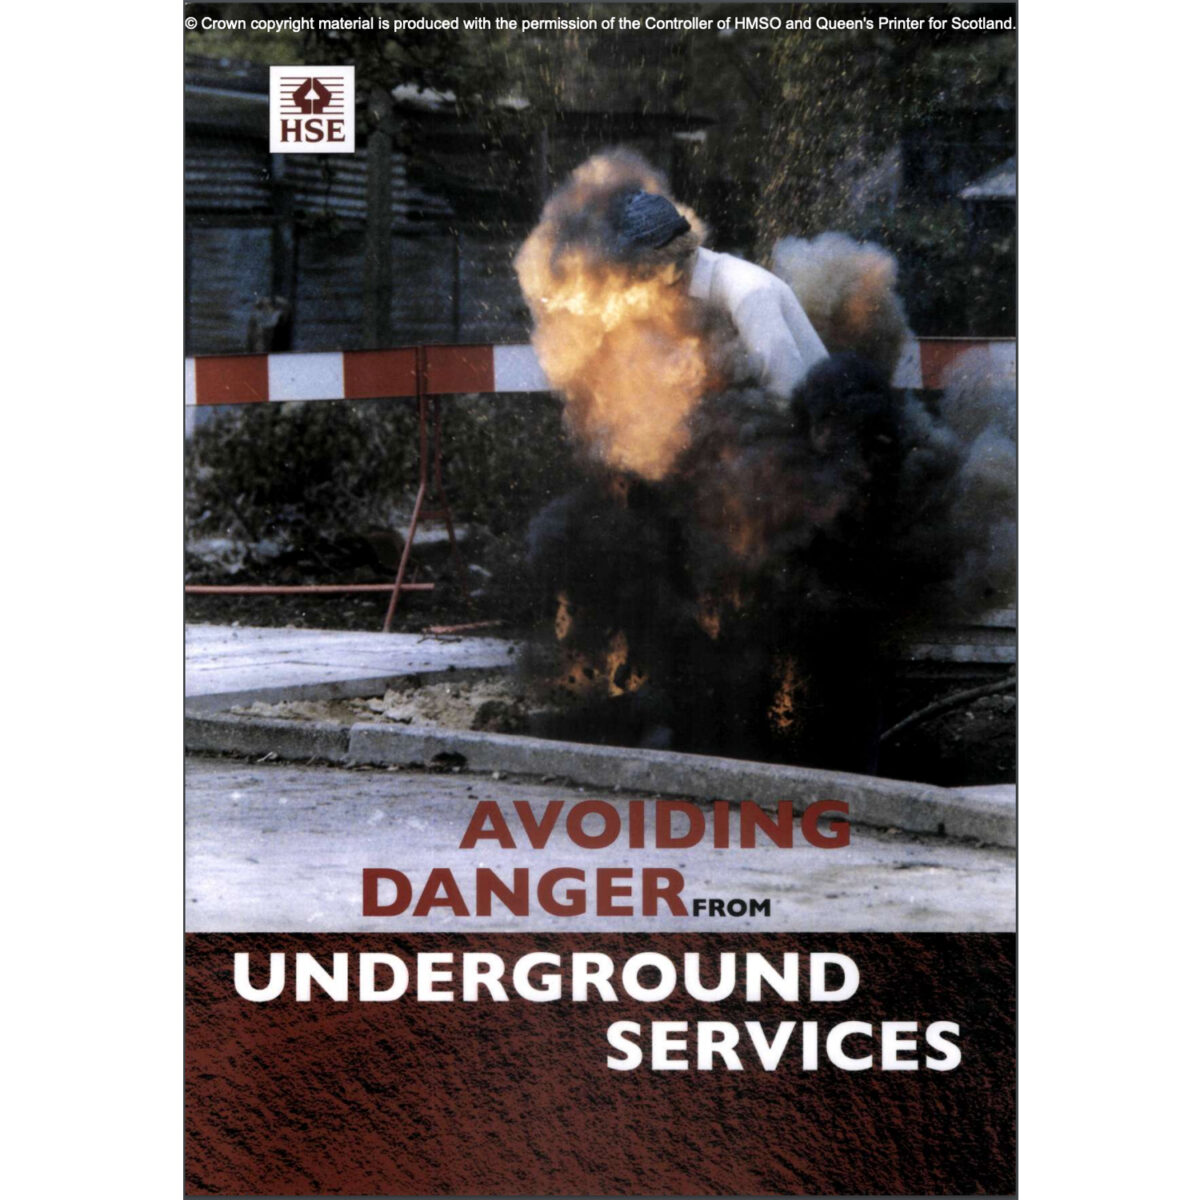 HSG47: Avoiding danger from underground services